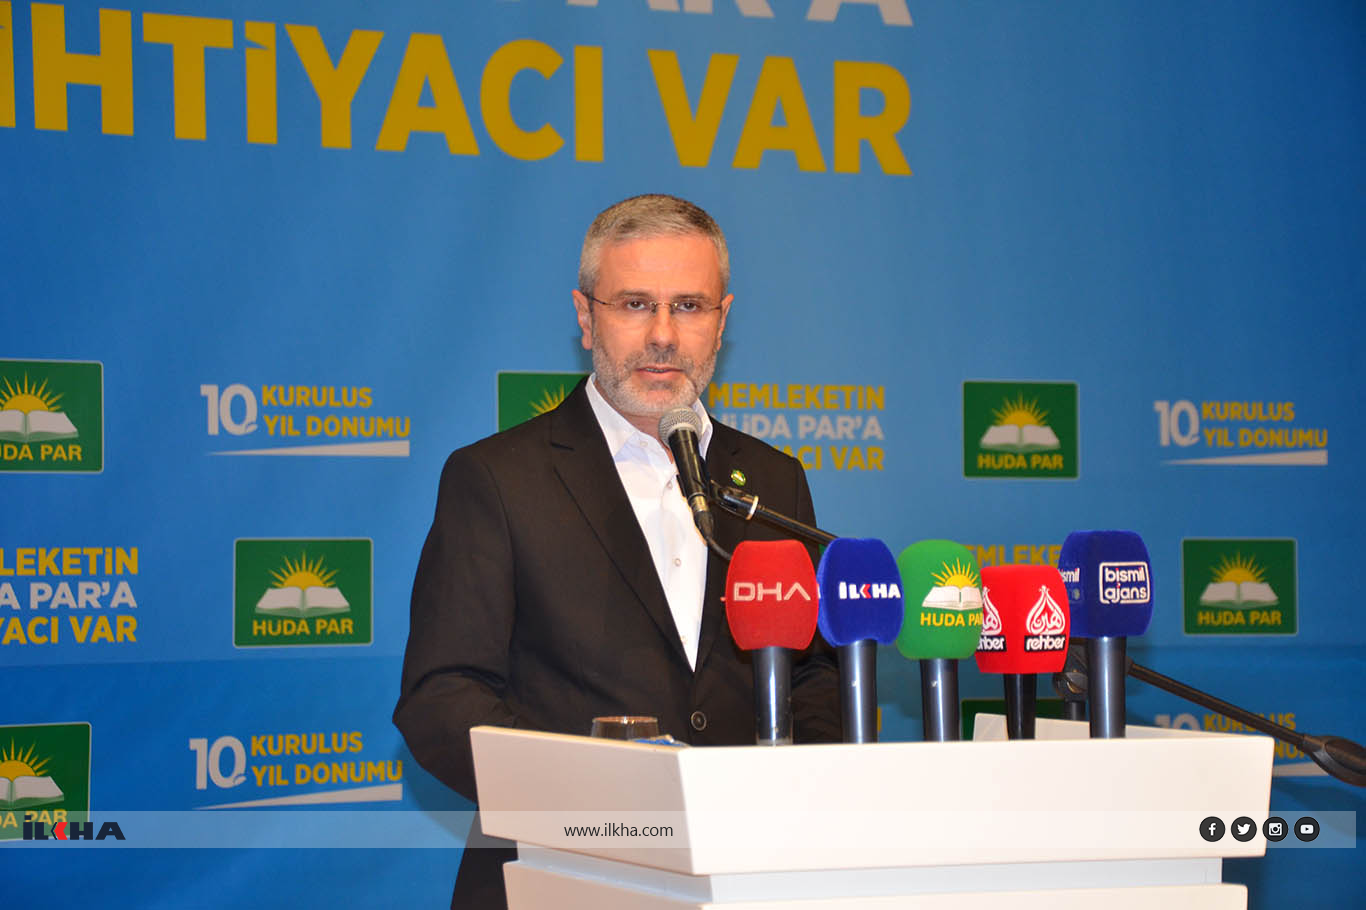 Kurdish issue can be solved through HÜDA PAR’s policies, Yalçın says